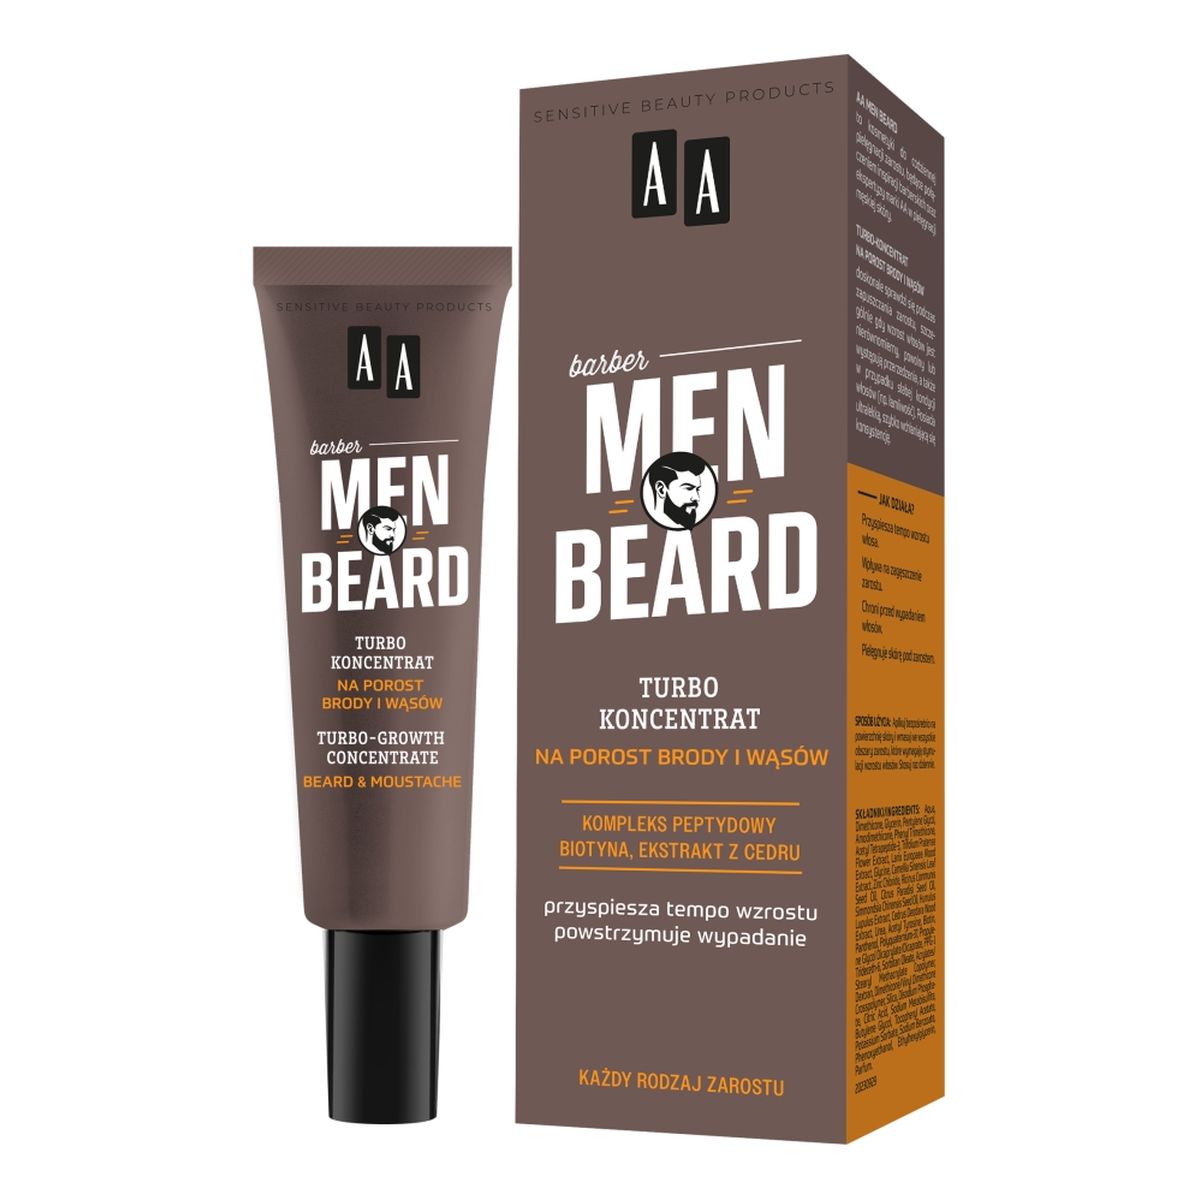 AA Men beard turbo-koncentrat na porost brody i wąsów 30ml